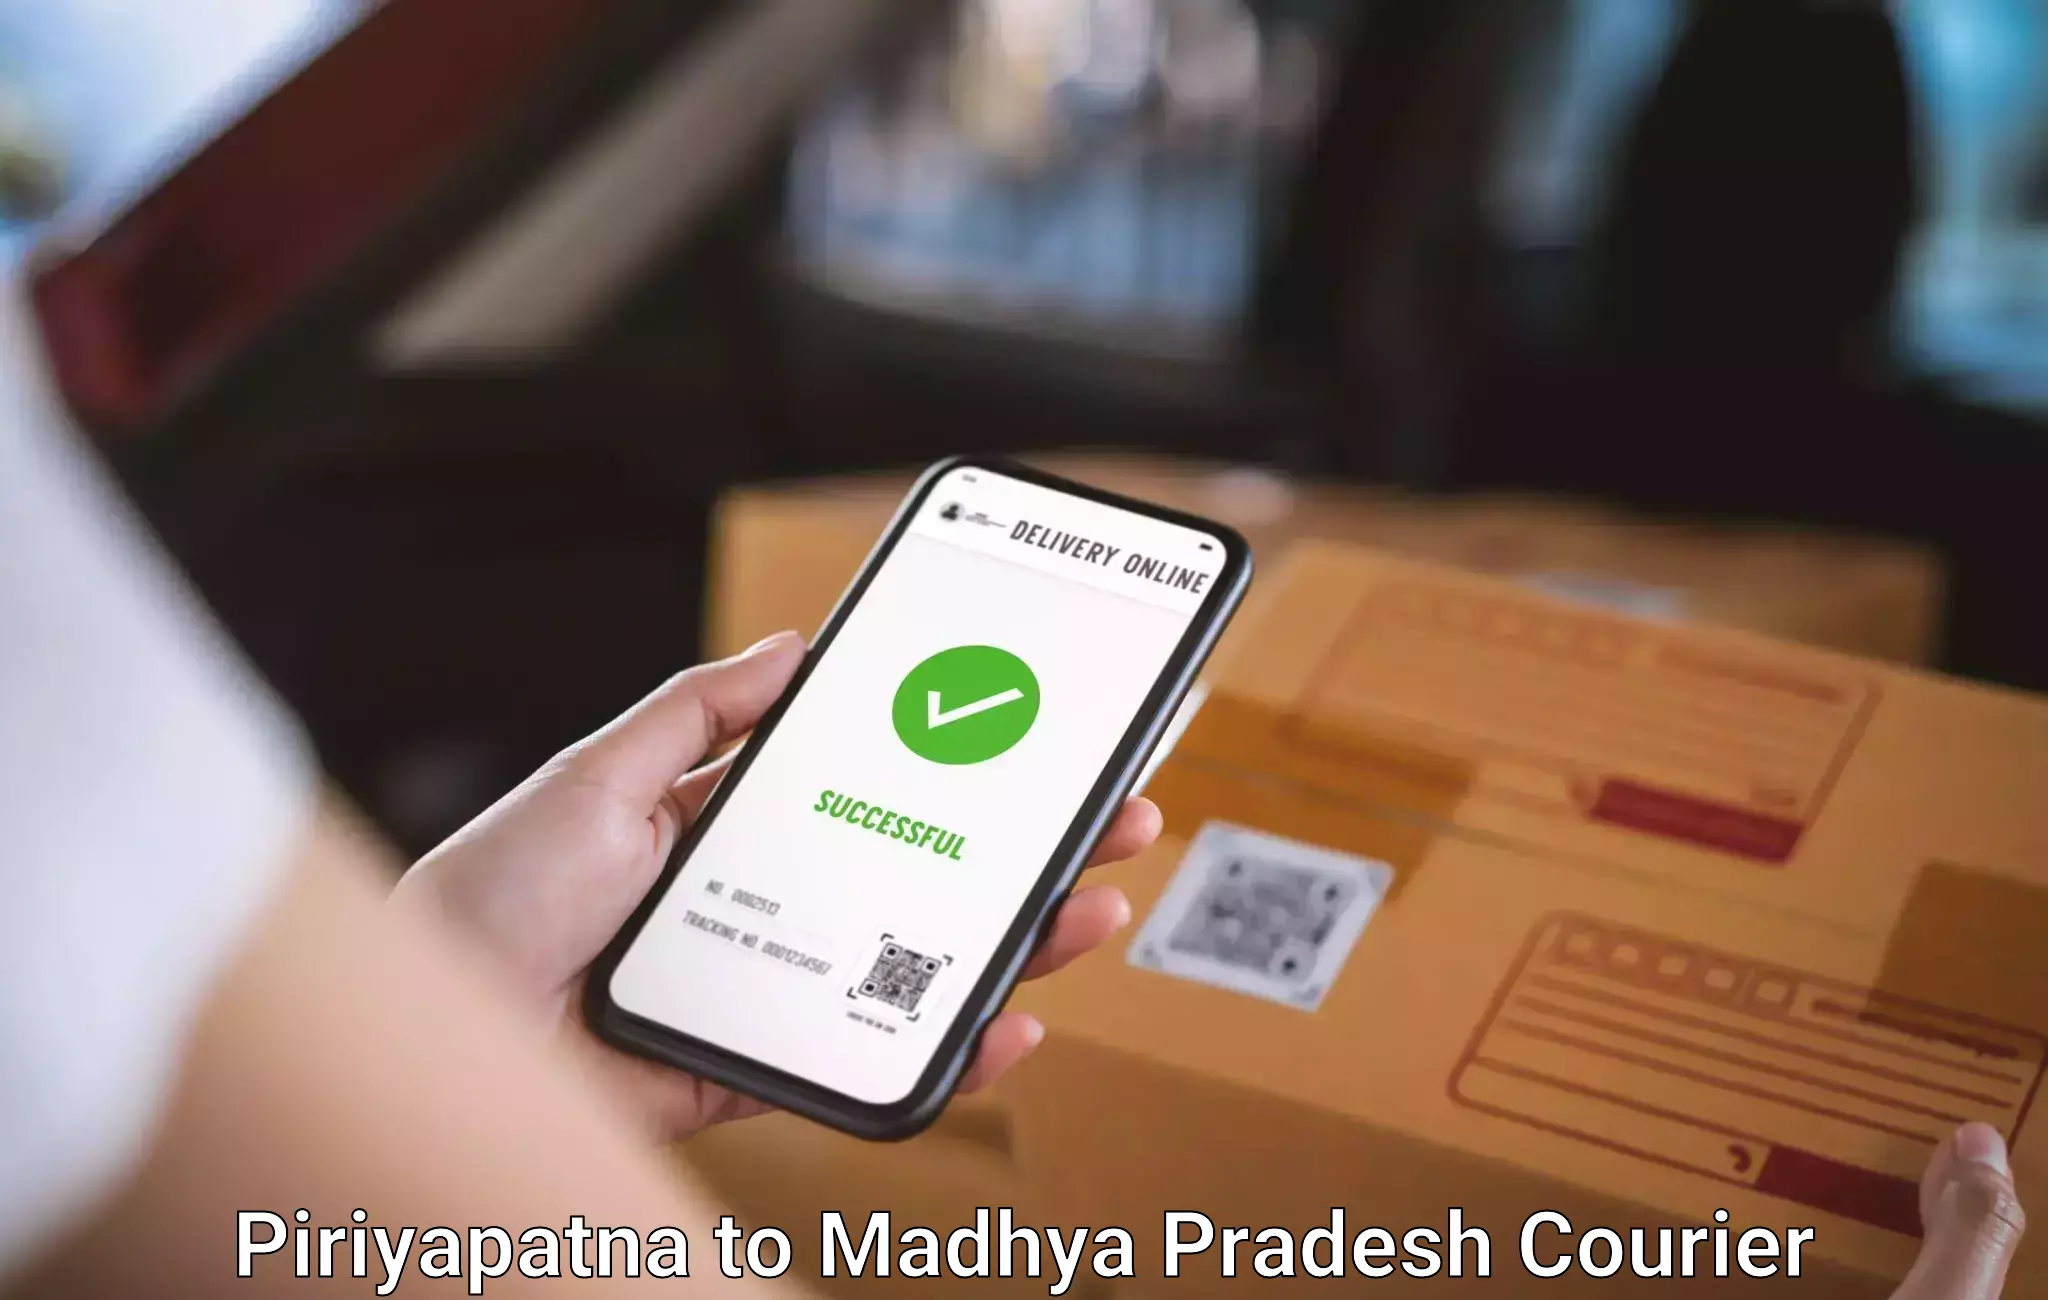 Baggage courier insights Piriyapatna to Madhya Pradesh